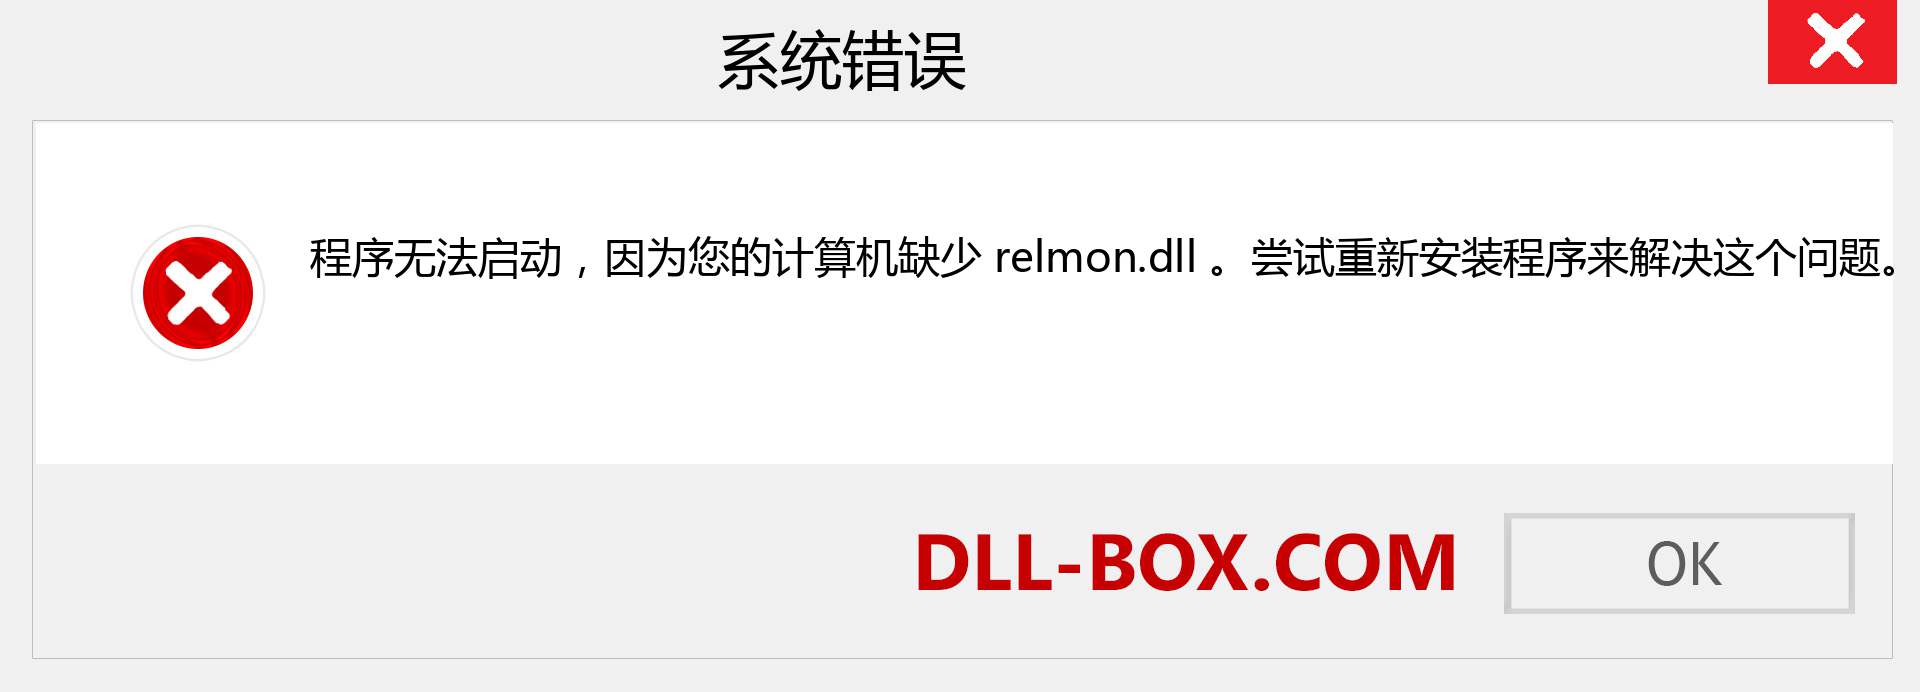 relmon.dll 文件丢失？。 适用于 Windows 7、8、10 的下载 - 修复 Windows、照片、图像上的 relmon dll 丢失错误